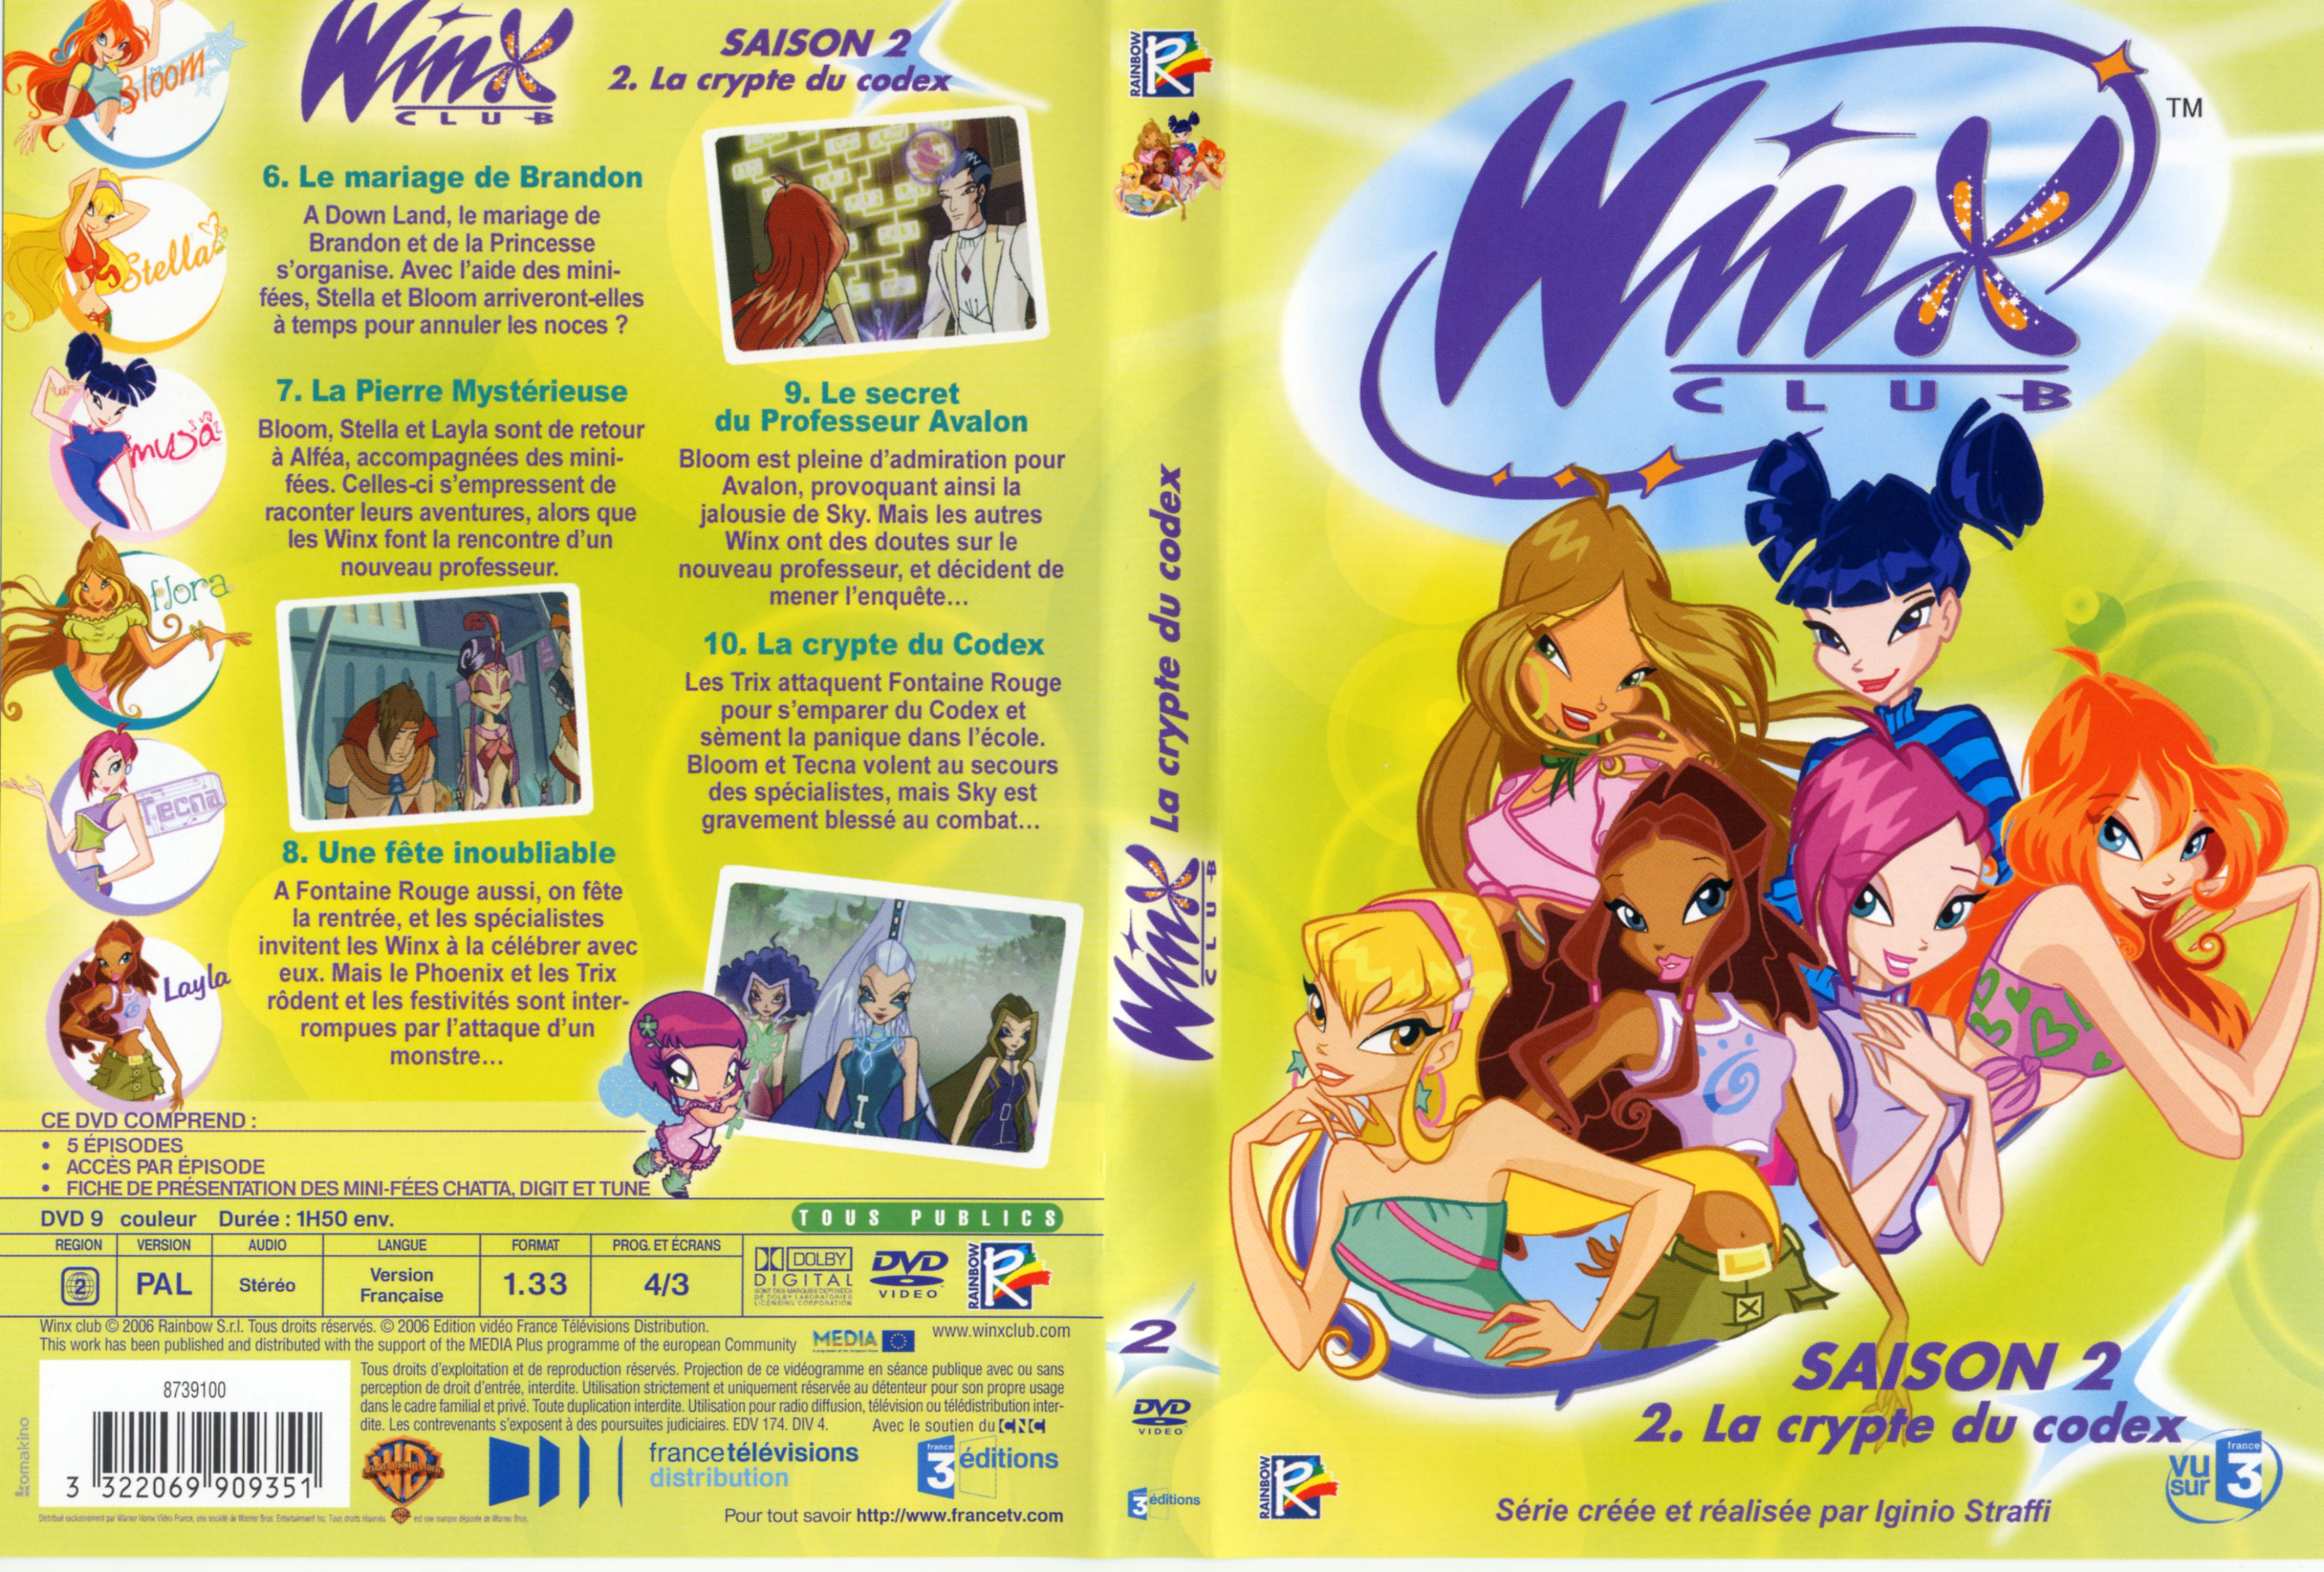 Jaquette DVD Winx club saison 2 vol 2